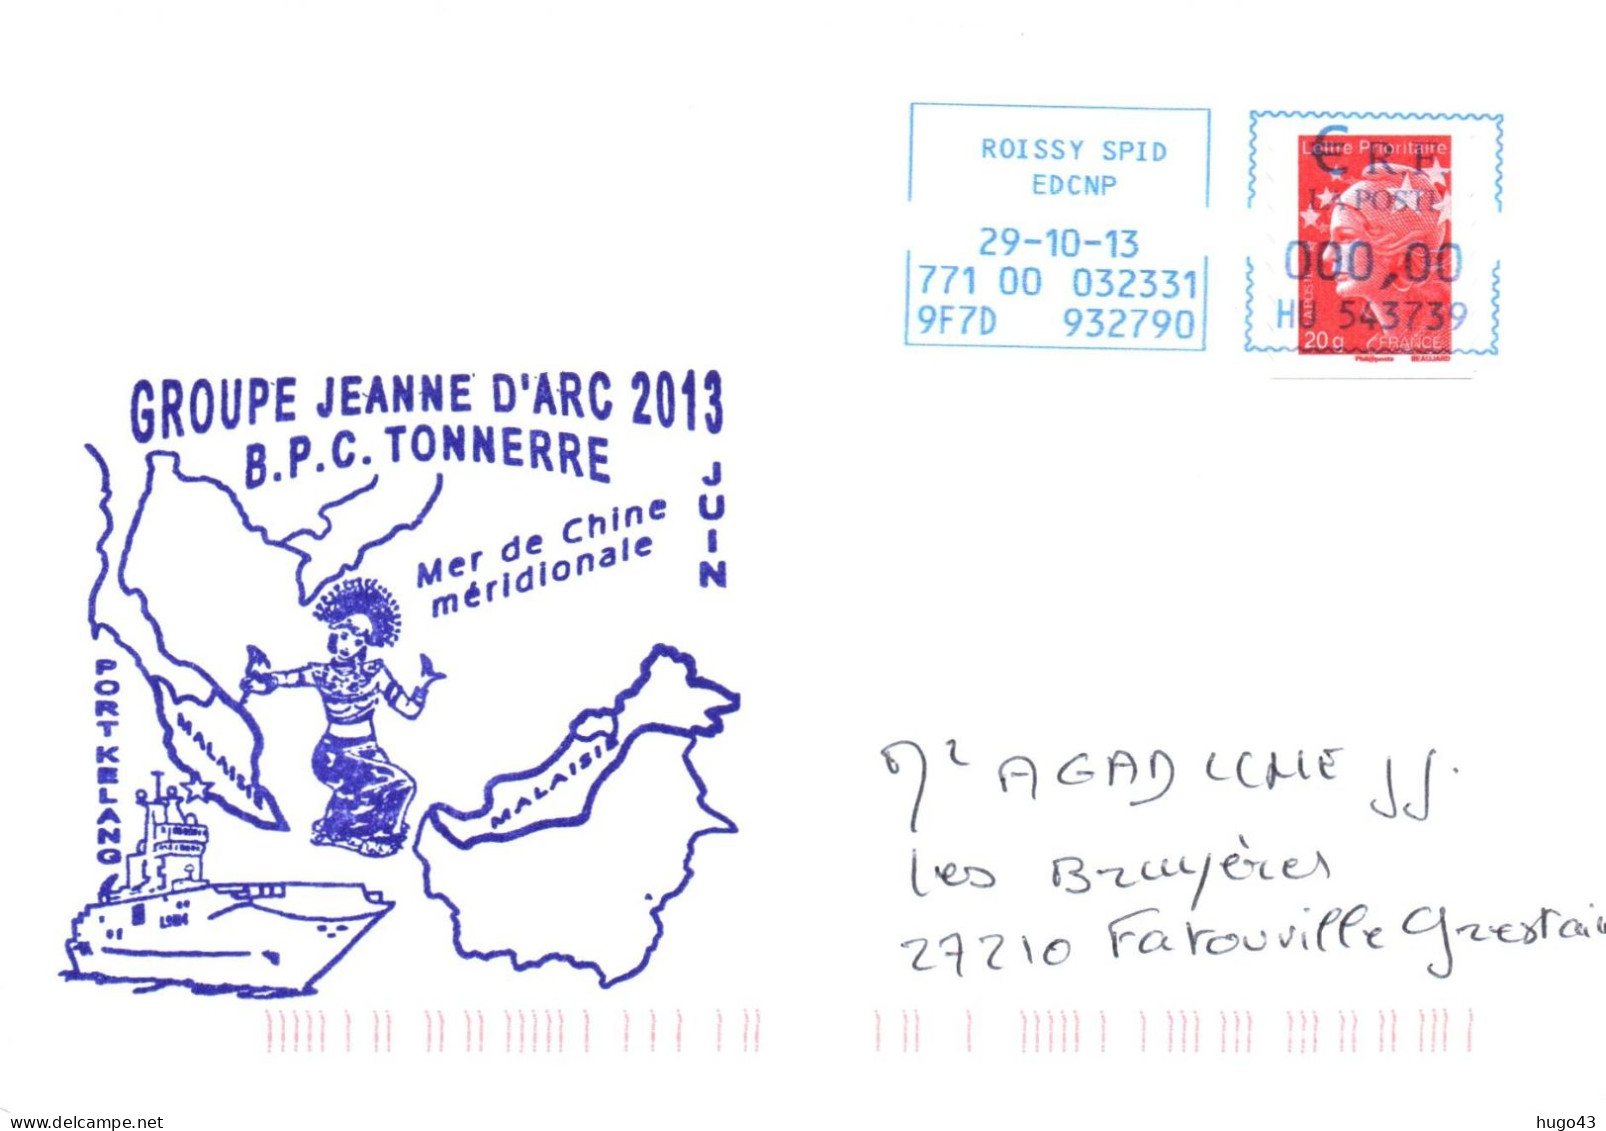 ENVELOPPE AVEC CACHET B.P.C. TONNERRE - GROUPE JEANNE D' ARC 2013 - MER DE CHINE MERIDIONALE LE 29/10/13 - Poste Navale